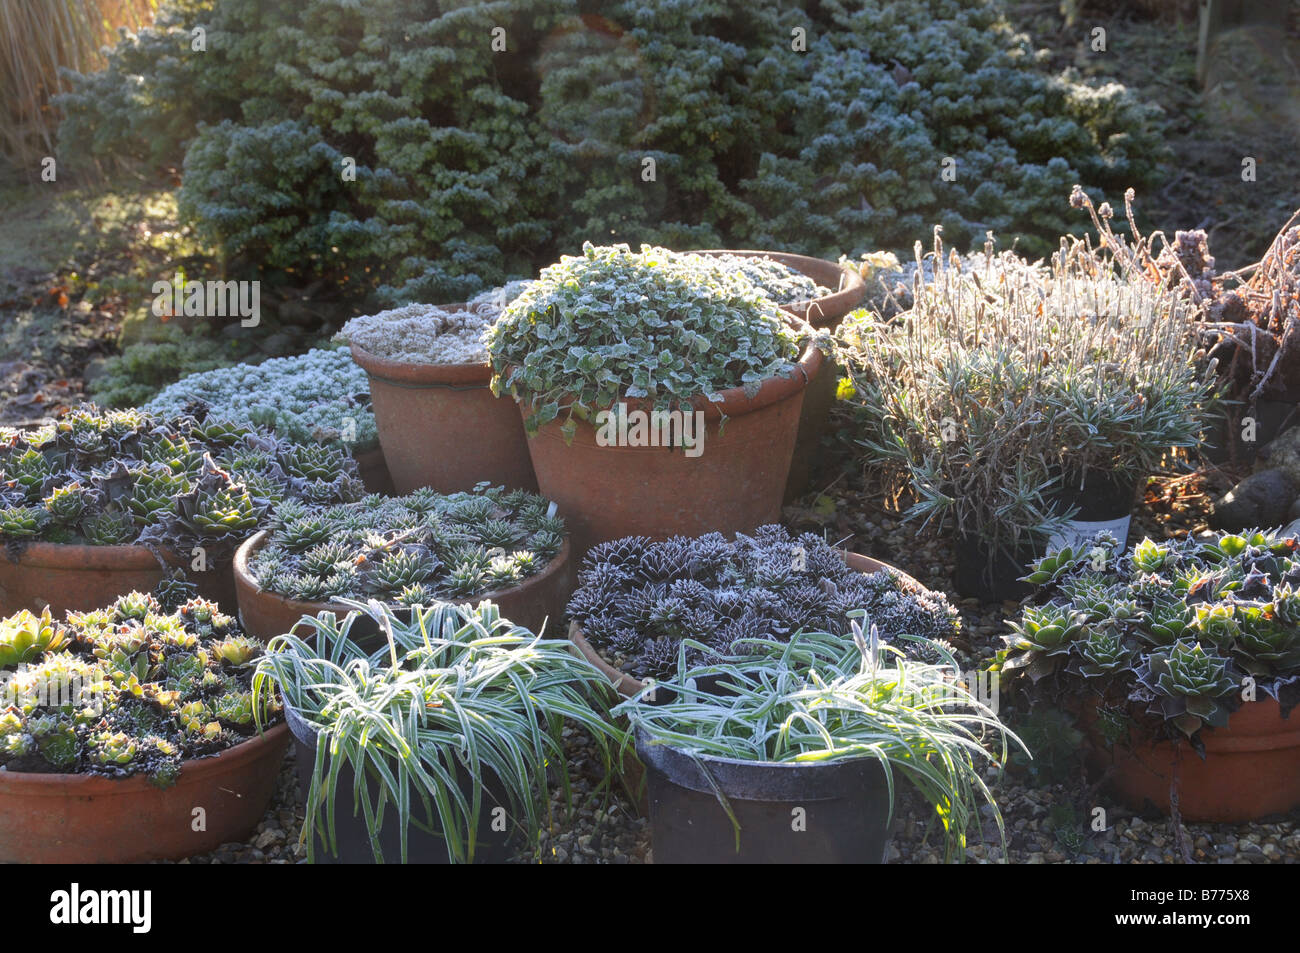 Rückseite beleuchteten Schuss von frostigen Garten mit Pflanzen in Töpfen einschließlich Semperviven UK Dezember Stockfoto